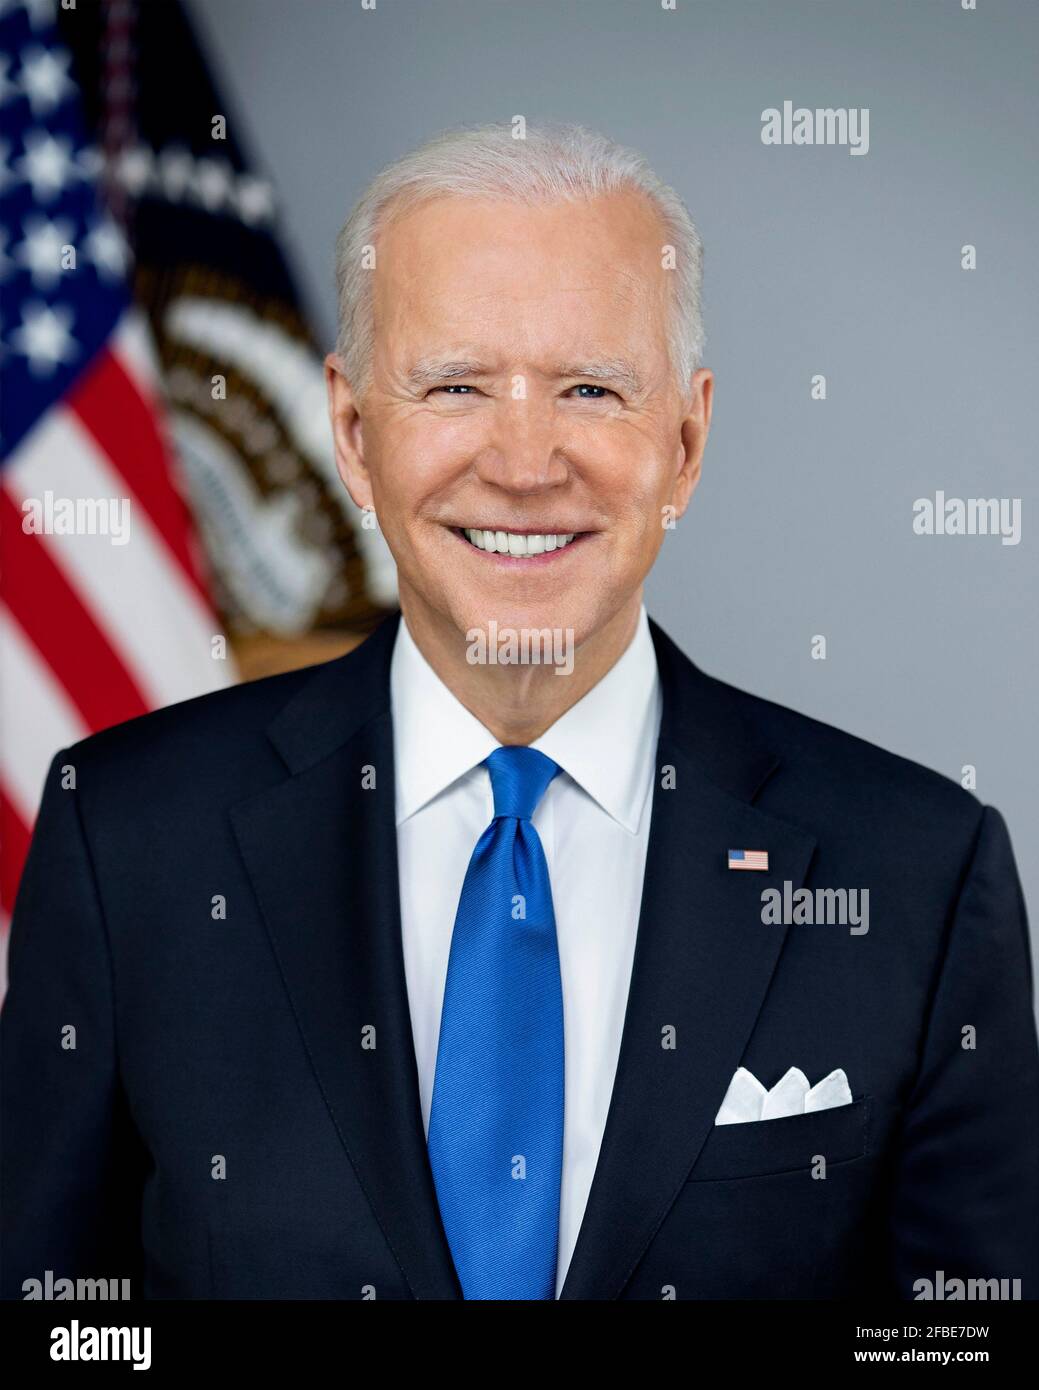 Joe Biden. Portrait du 46e président des États-Unis, Joseph Robinette Biden Jr. (Né en 1942), mars 2021. Photo officielle de la Maison Blanche. Banque D'Images